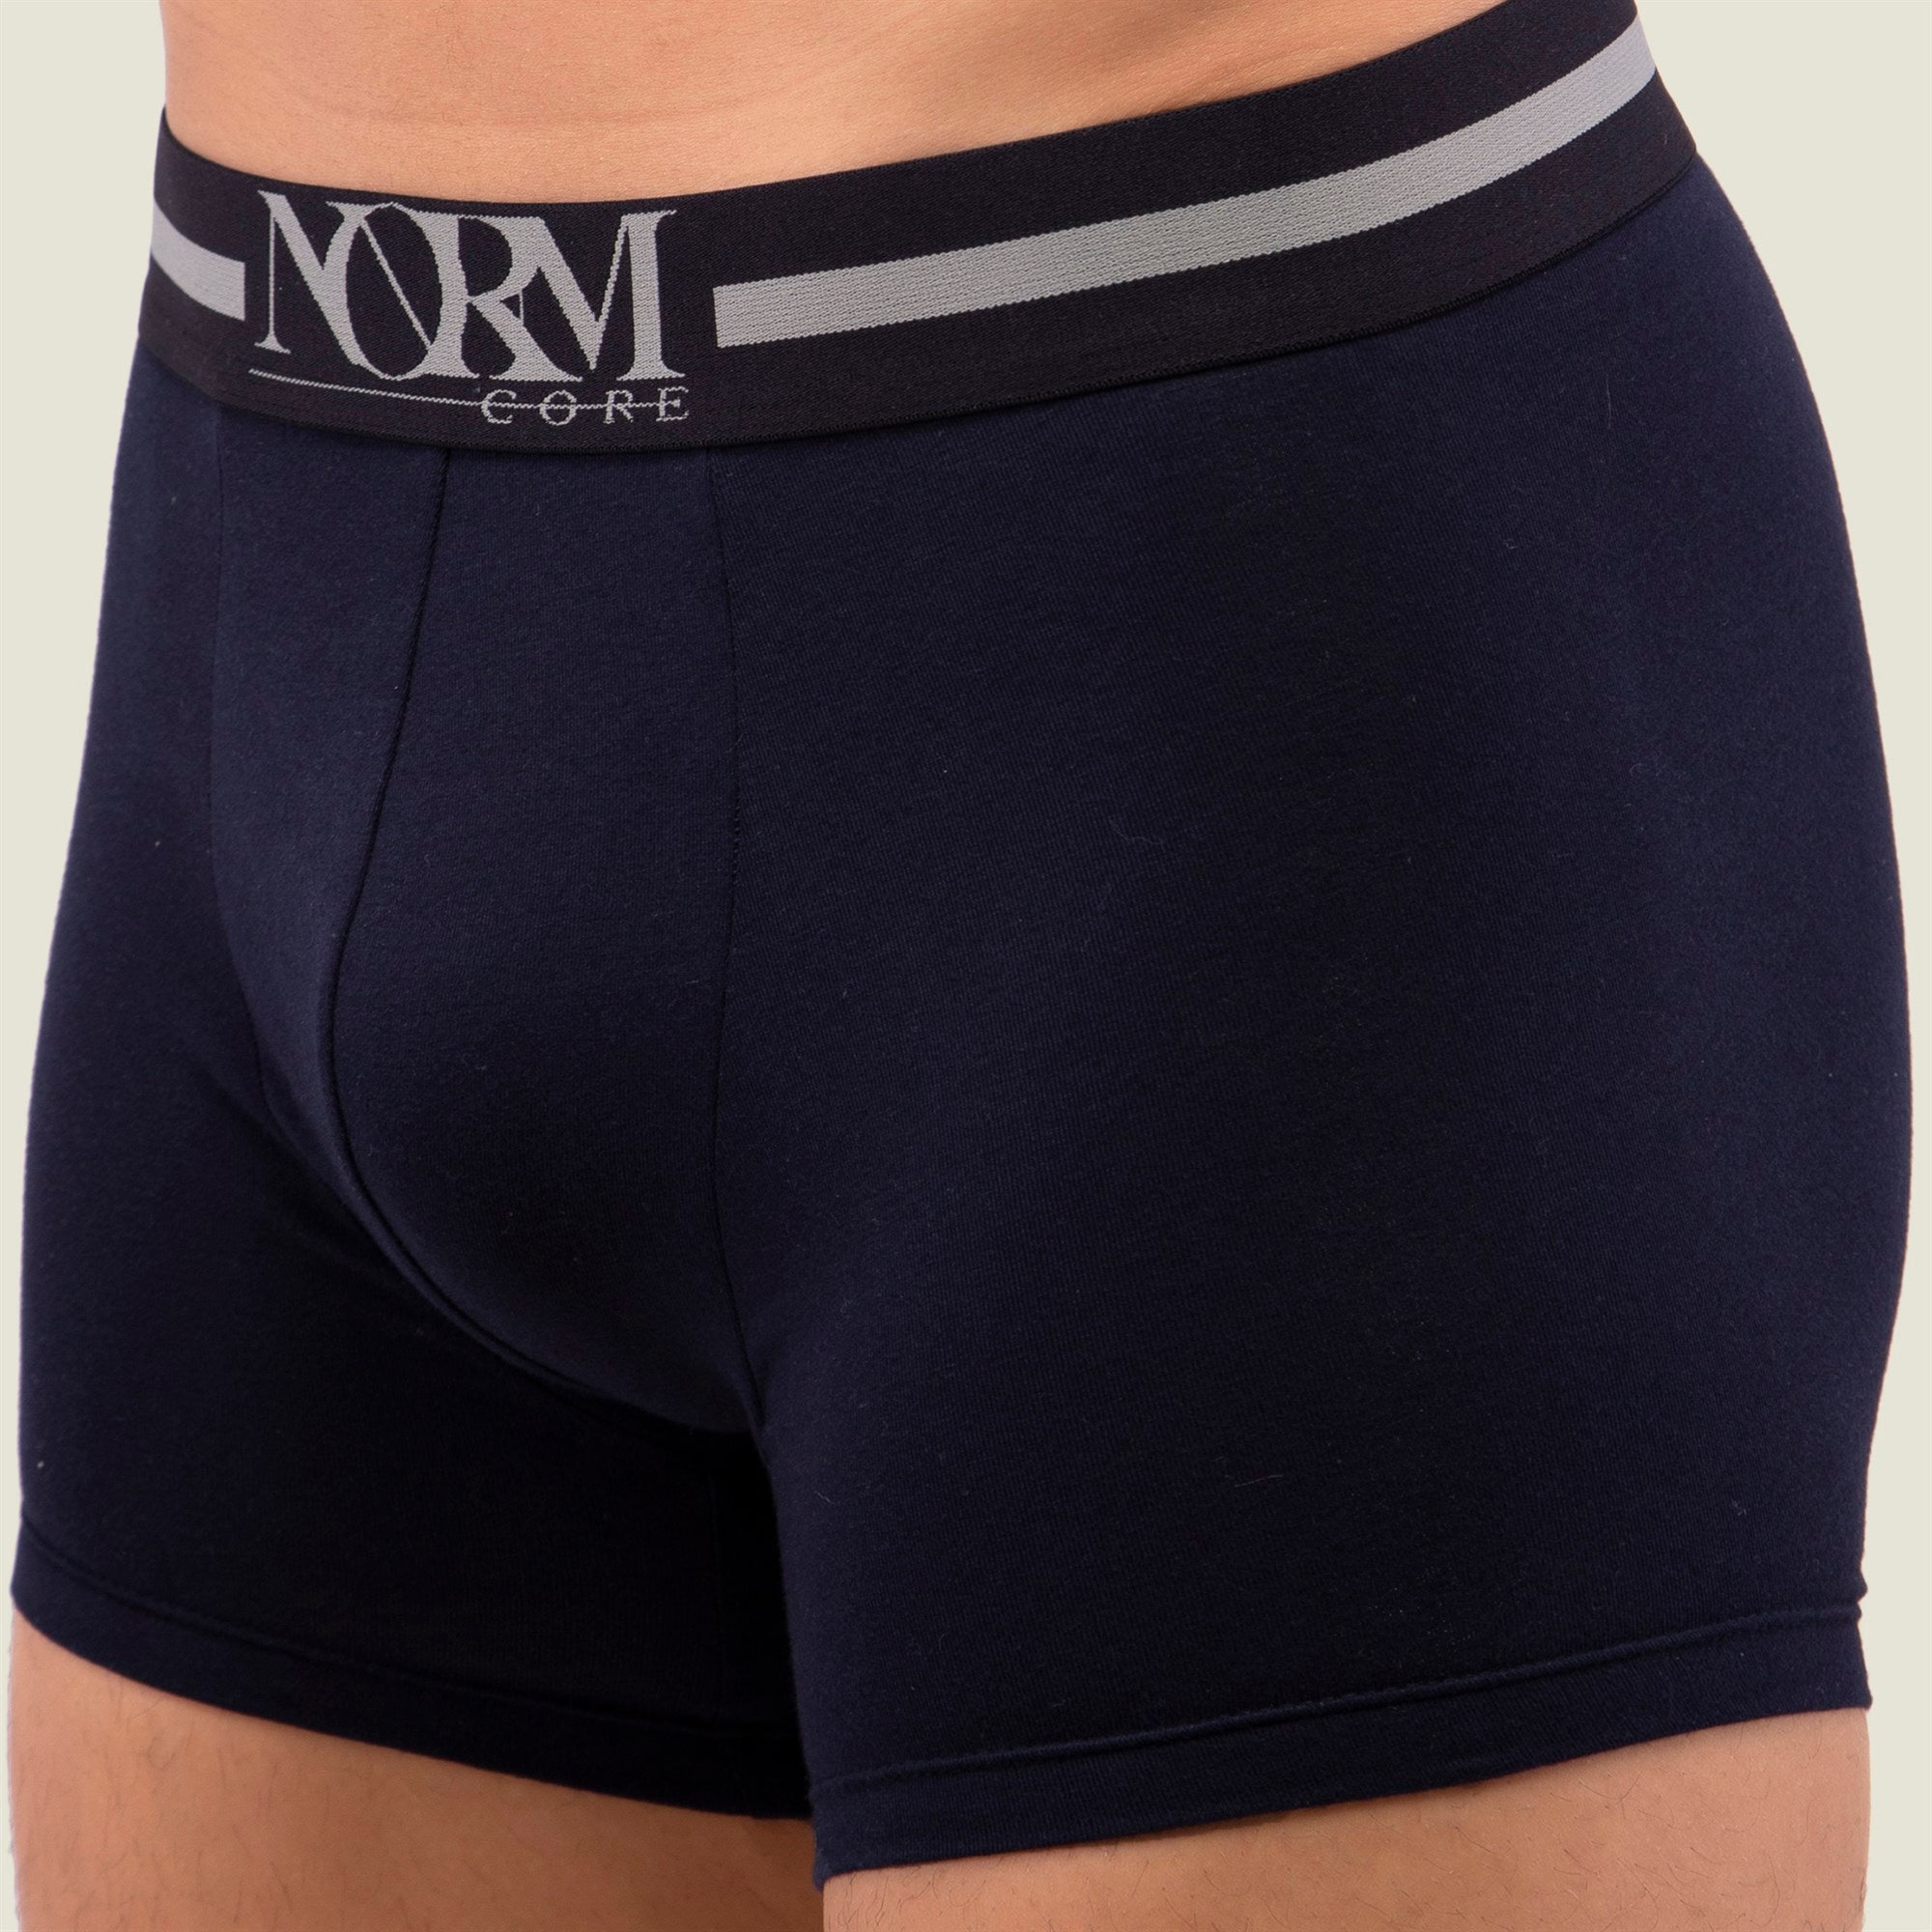 Normcore Cotton Innerwear - Navy Blue Trunk with Black Waistband Underwear